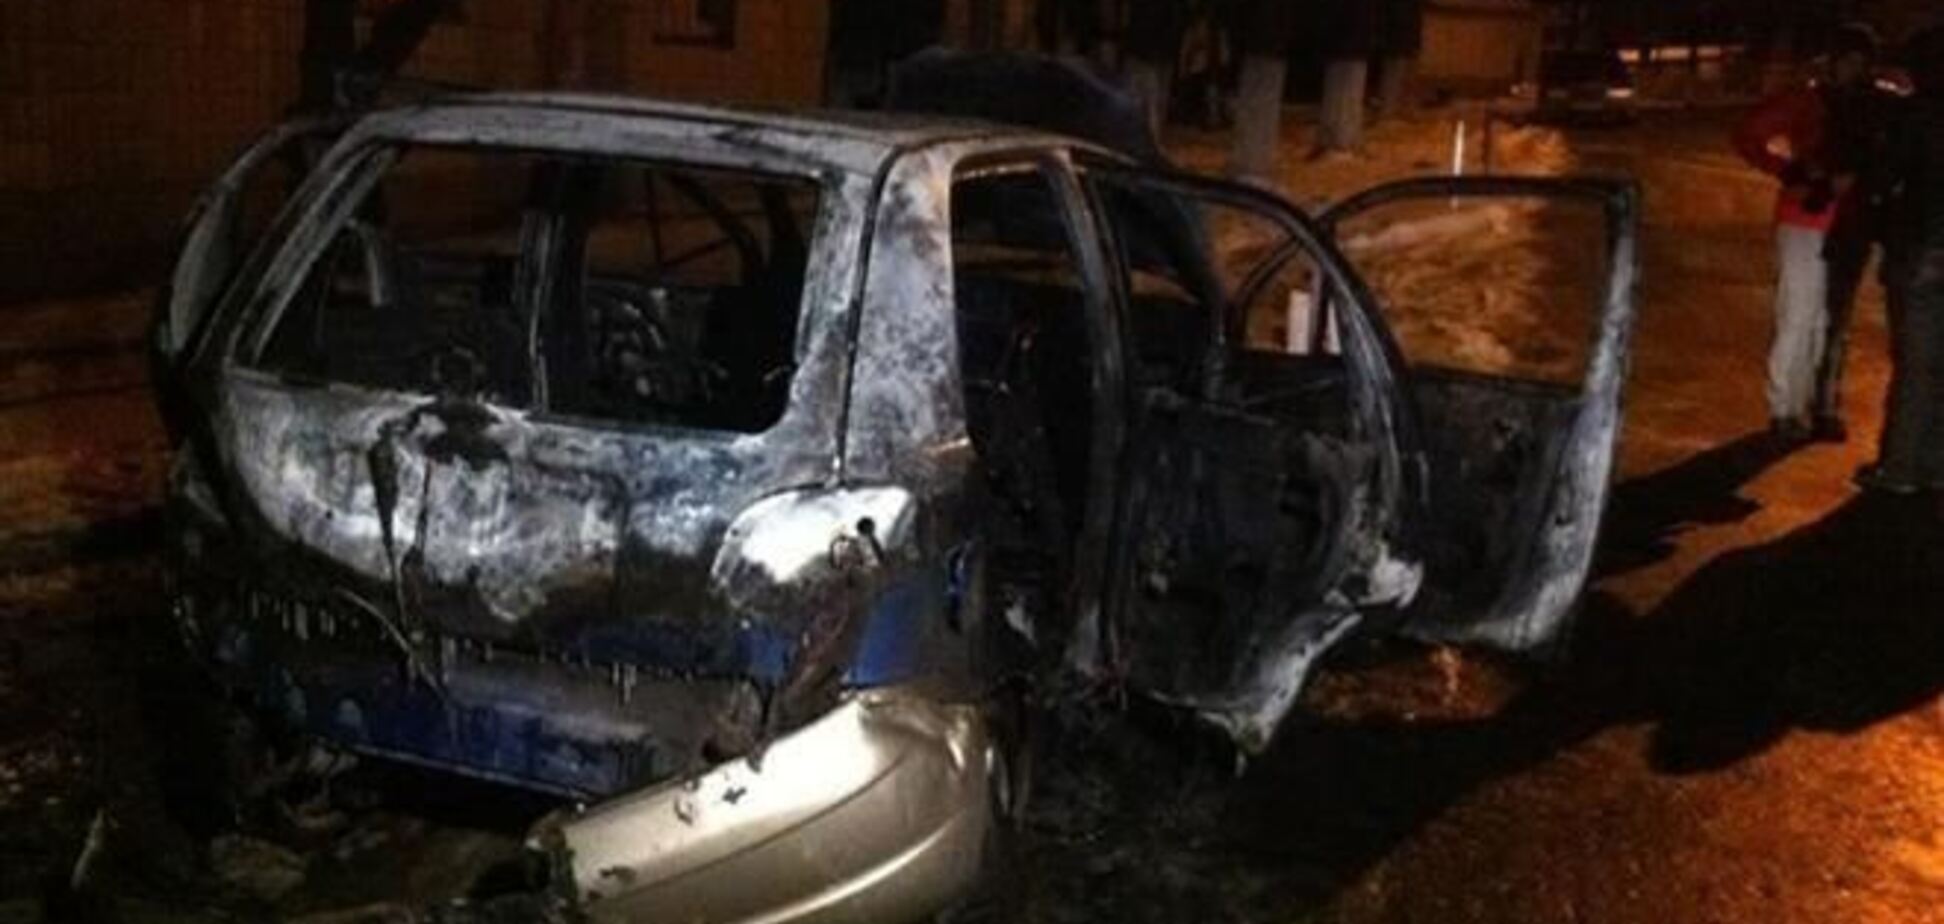 Міліція працює над запобіганням масових підпалів авто в Києві